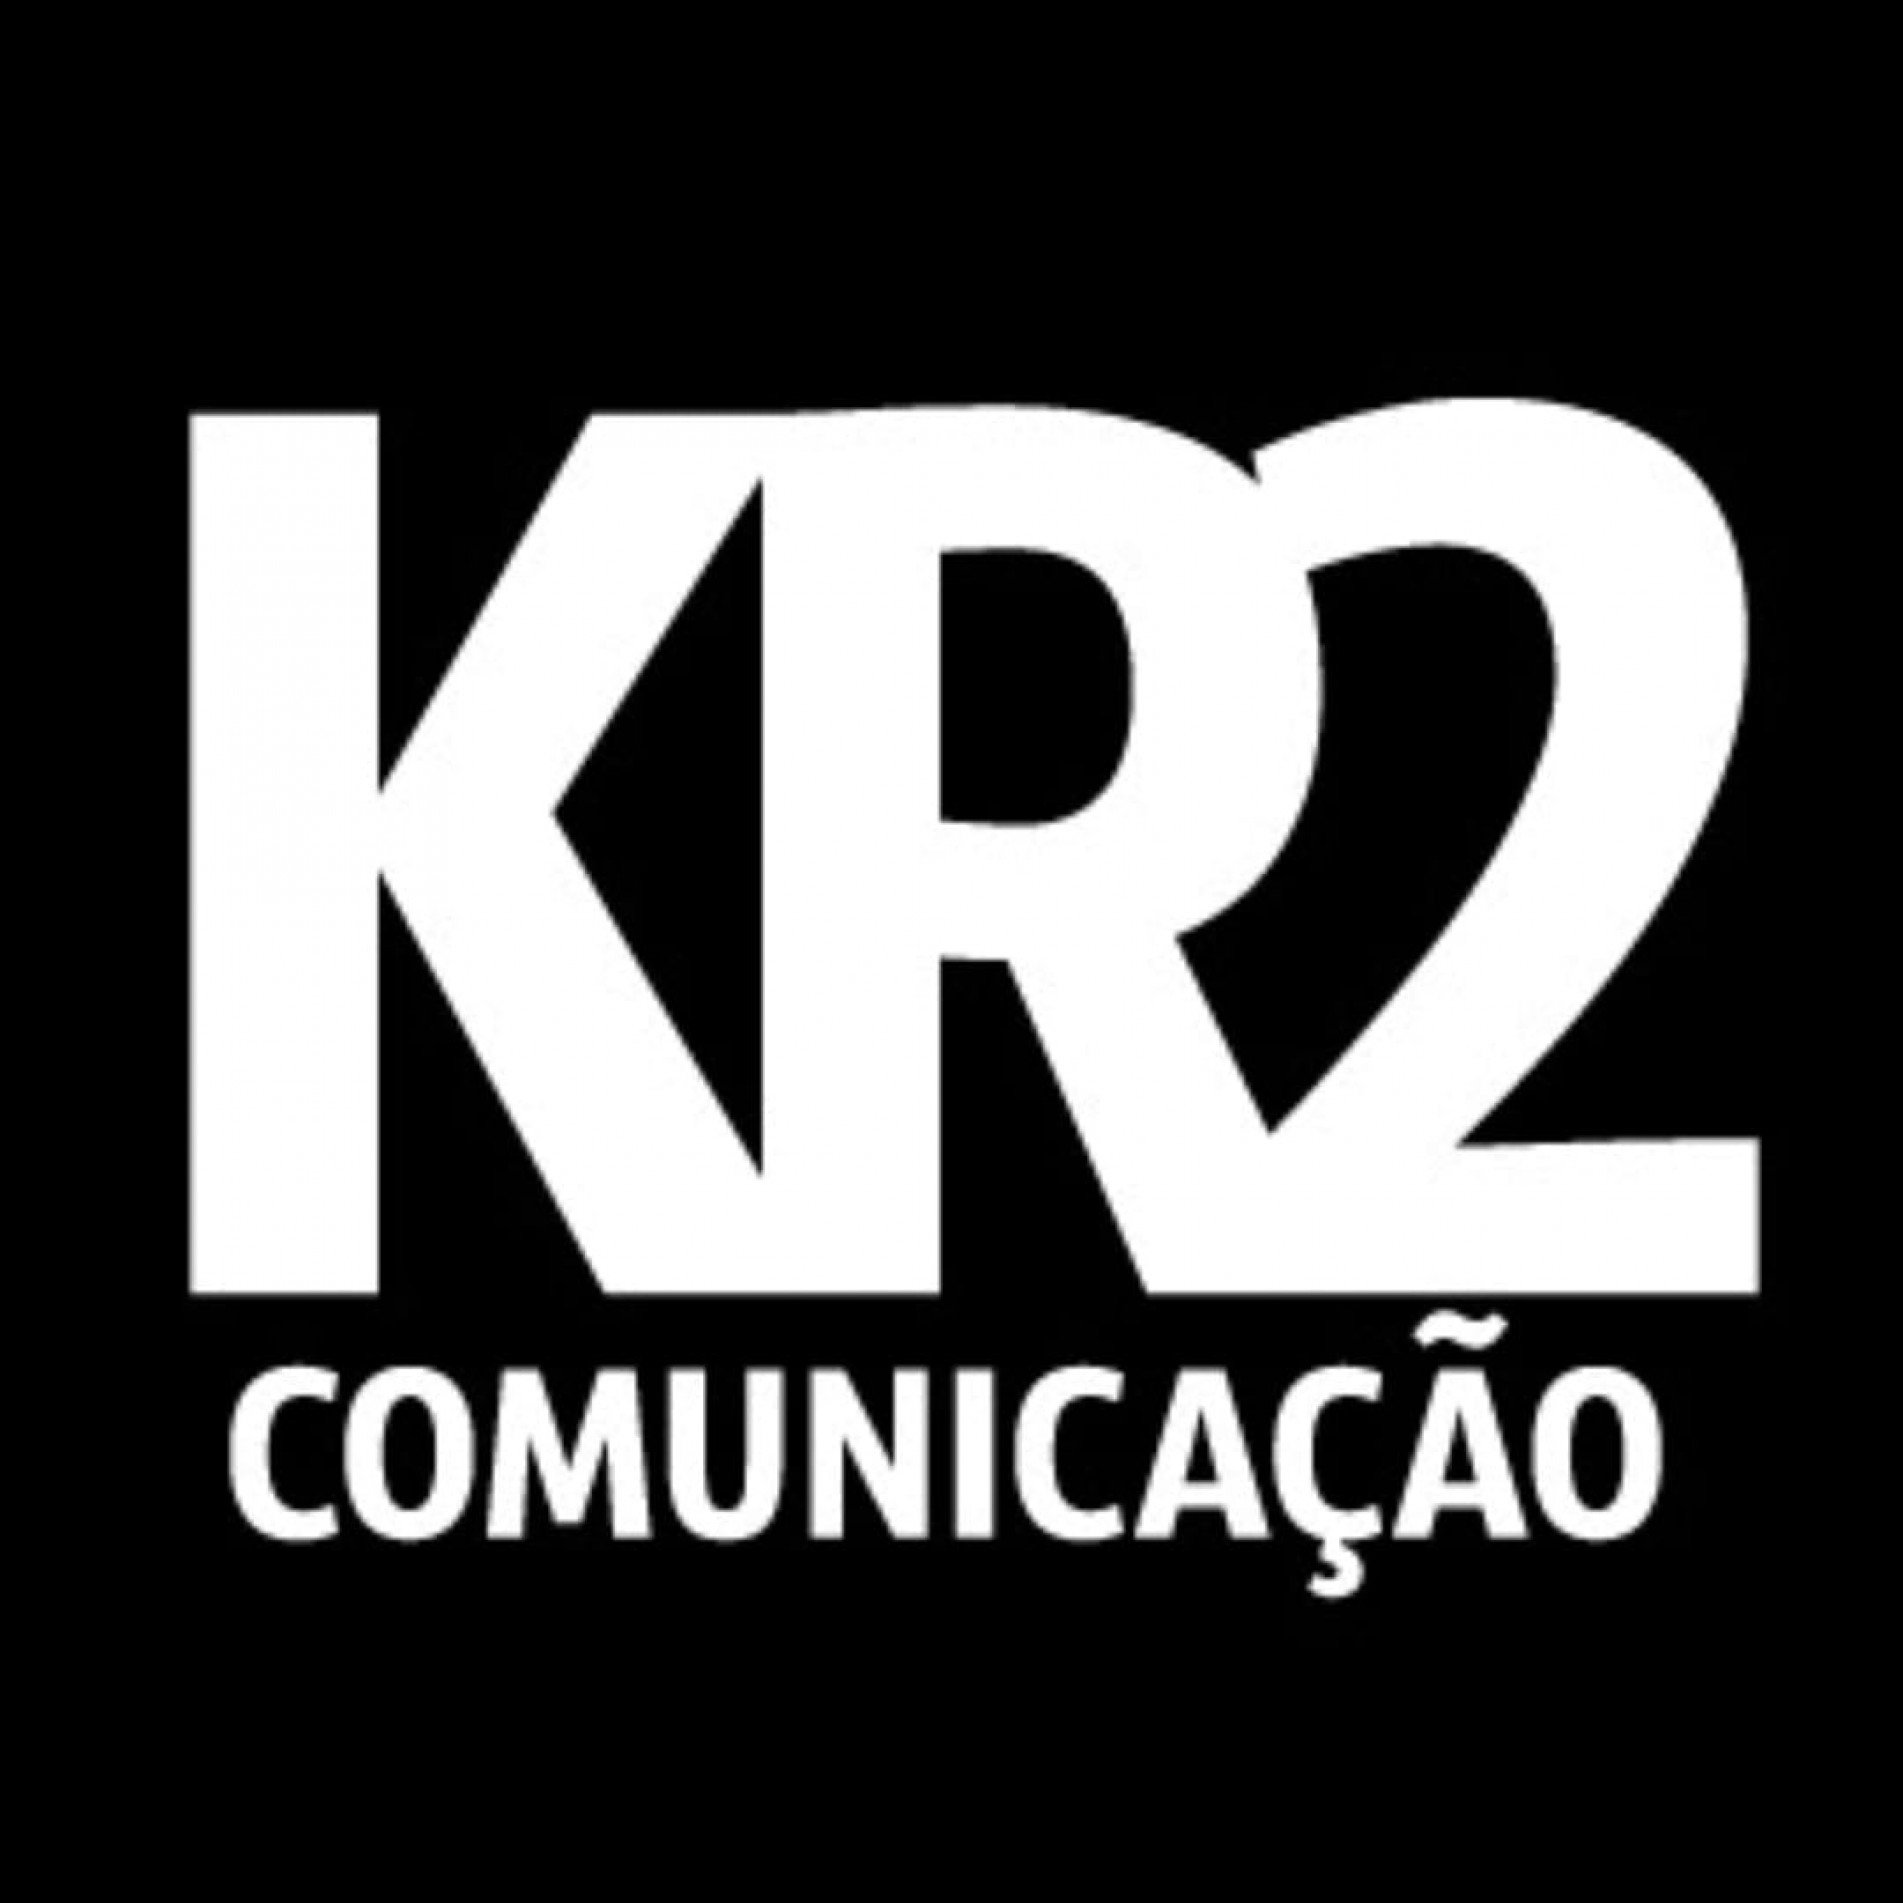 KR2 Comunicação, o seu negócio nos principais veículos de comunicação. 